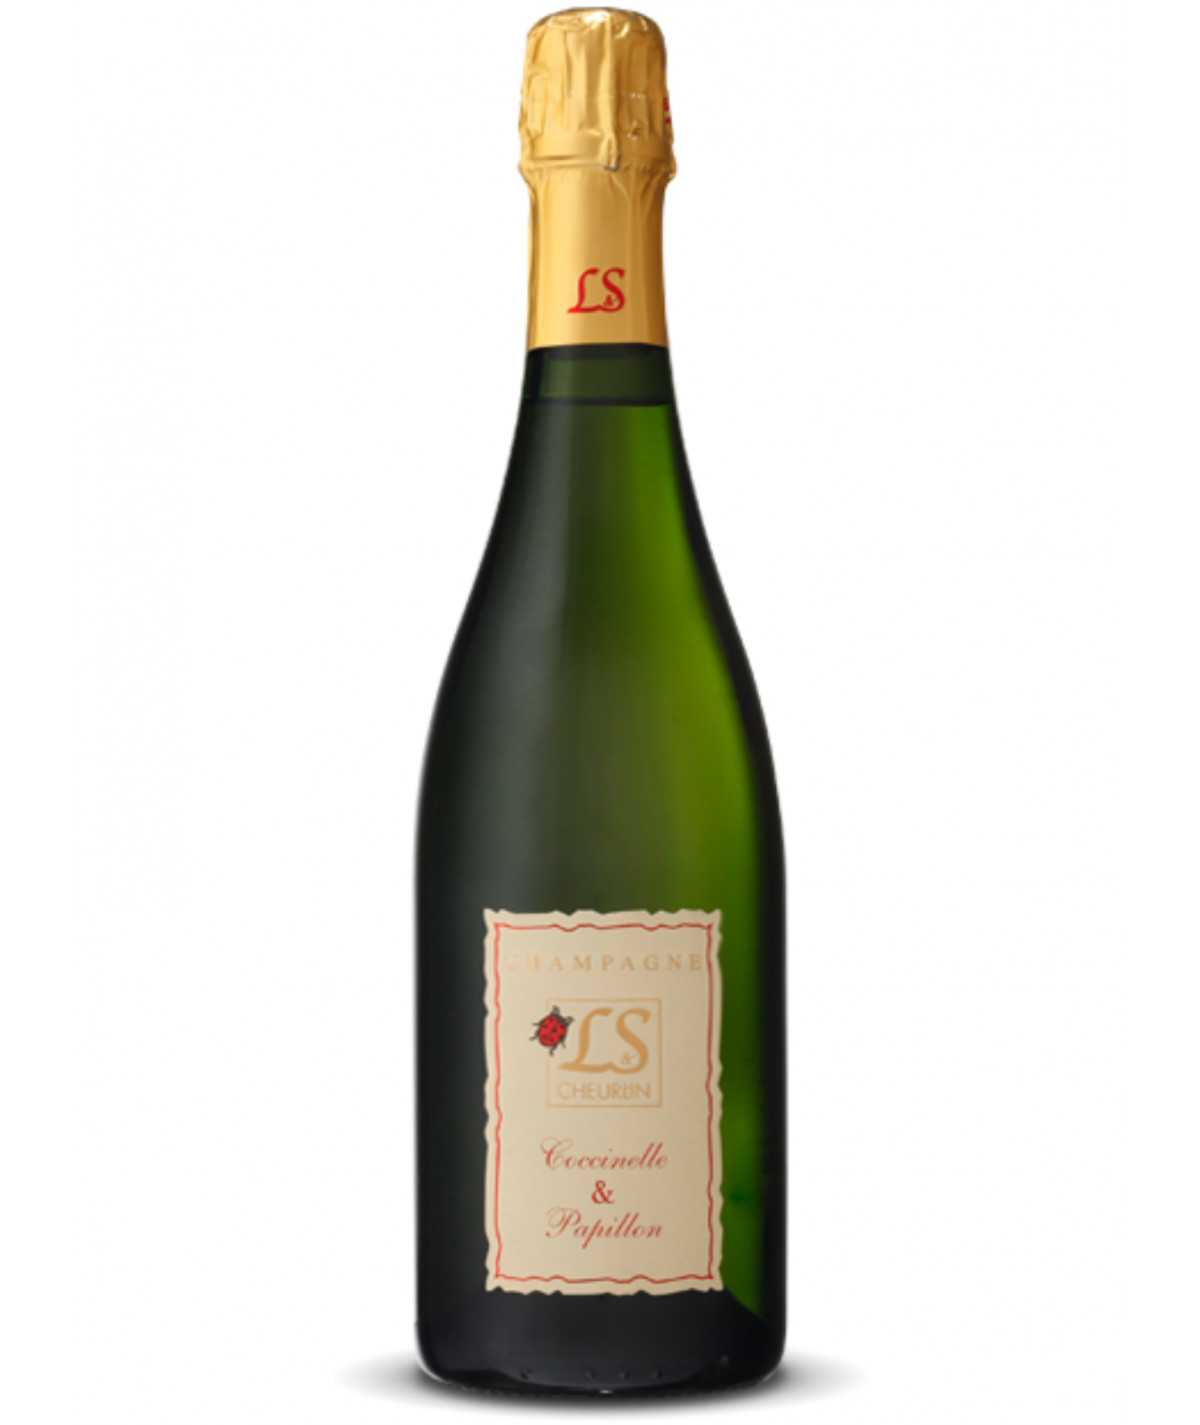 Cheurlin - Cuvée Coccinelle et Papillon - 2015 Vintage Champagne